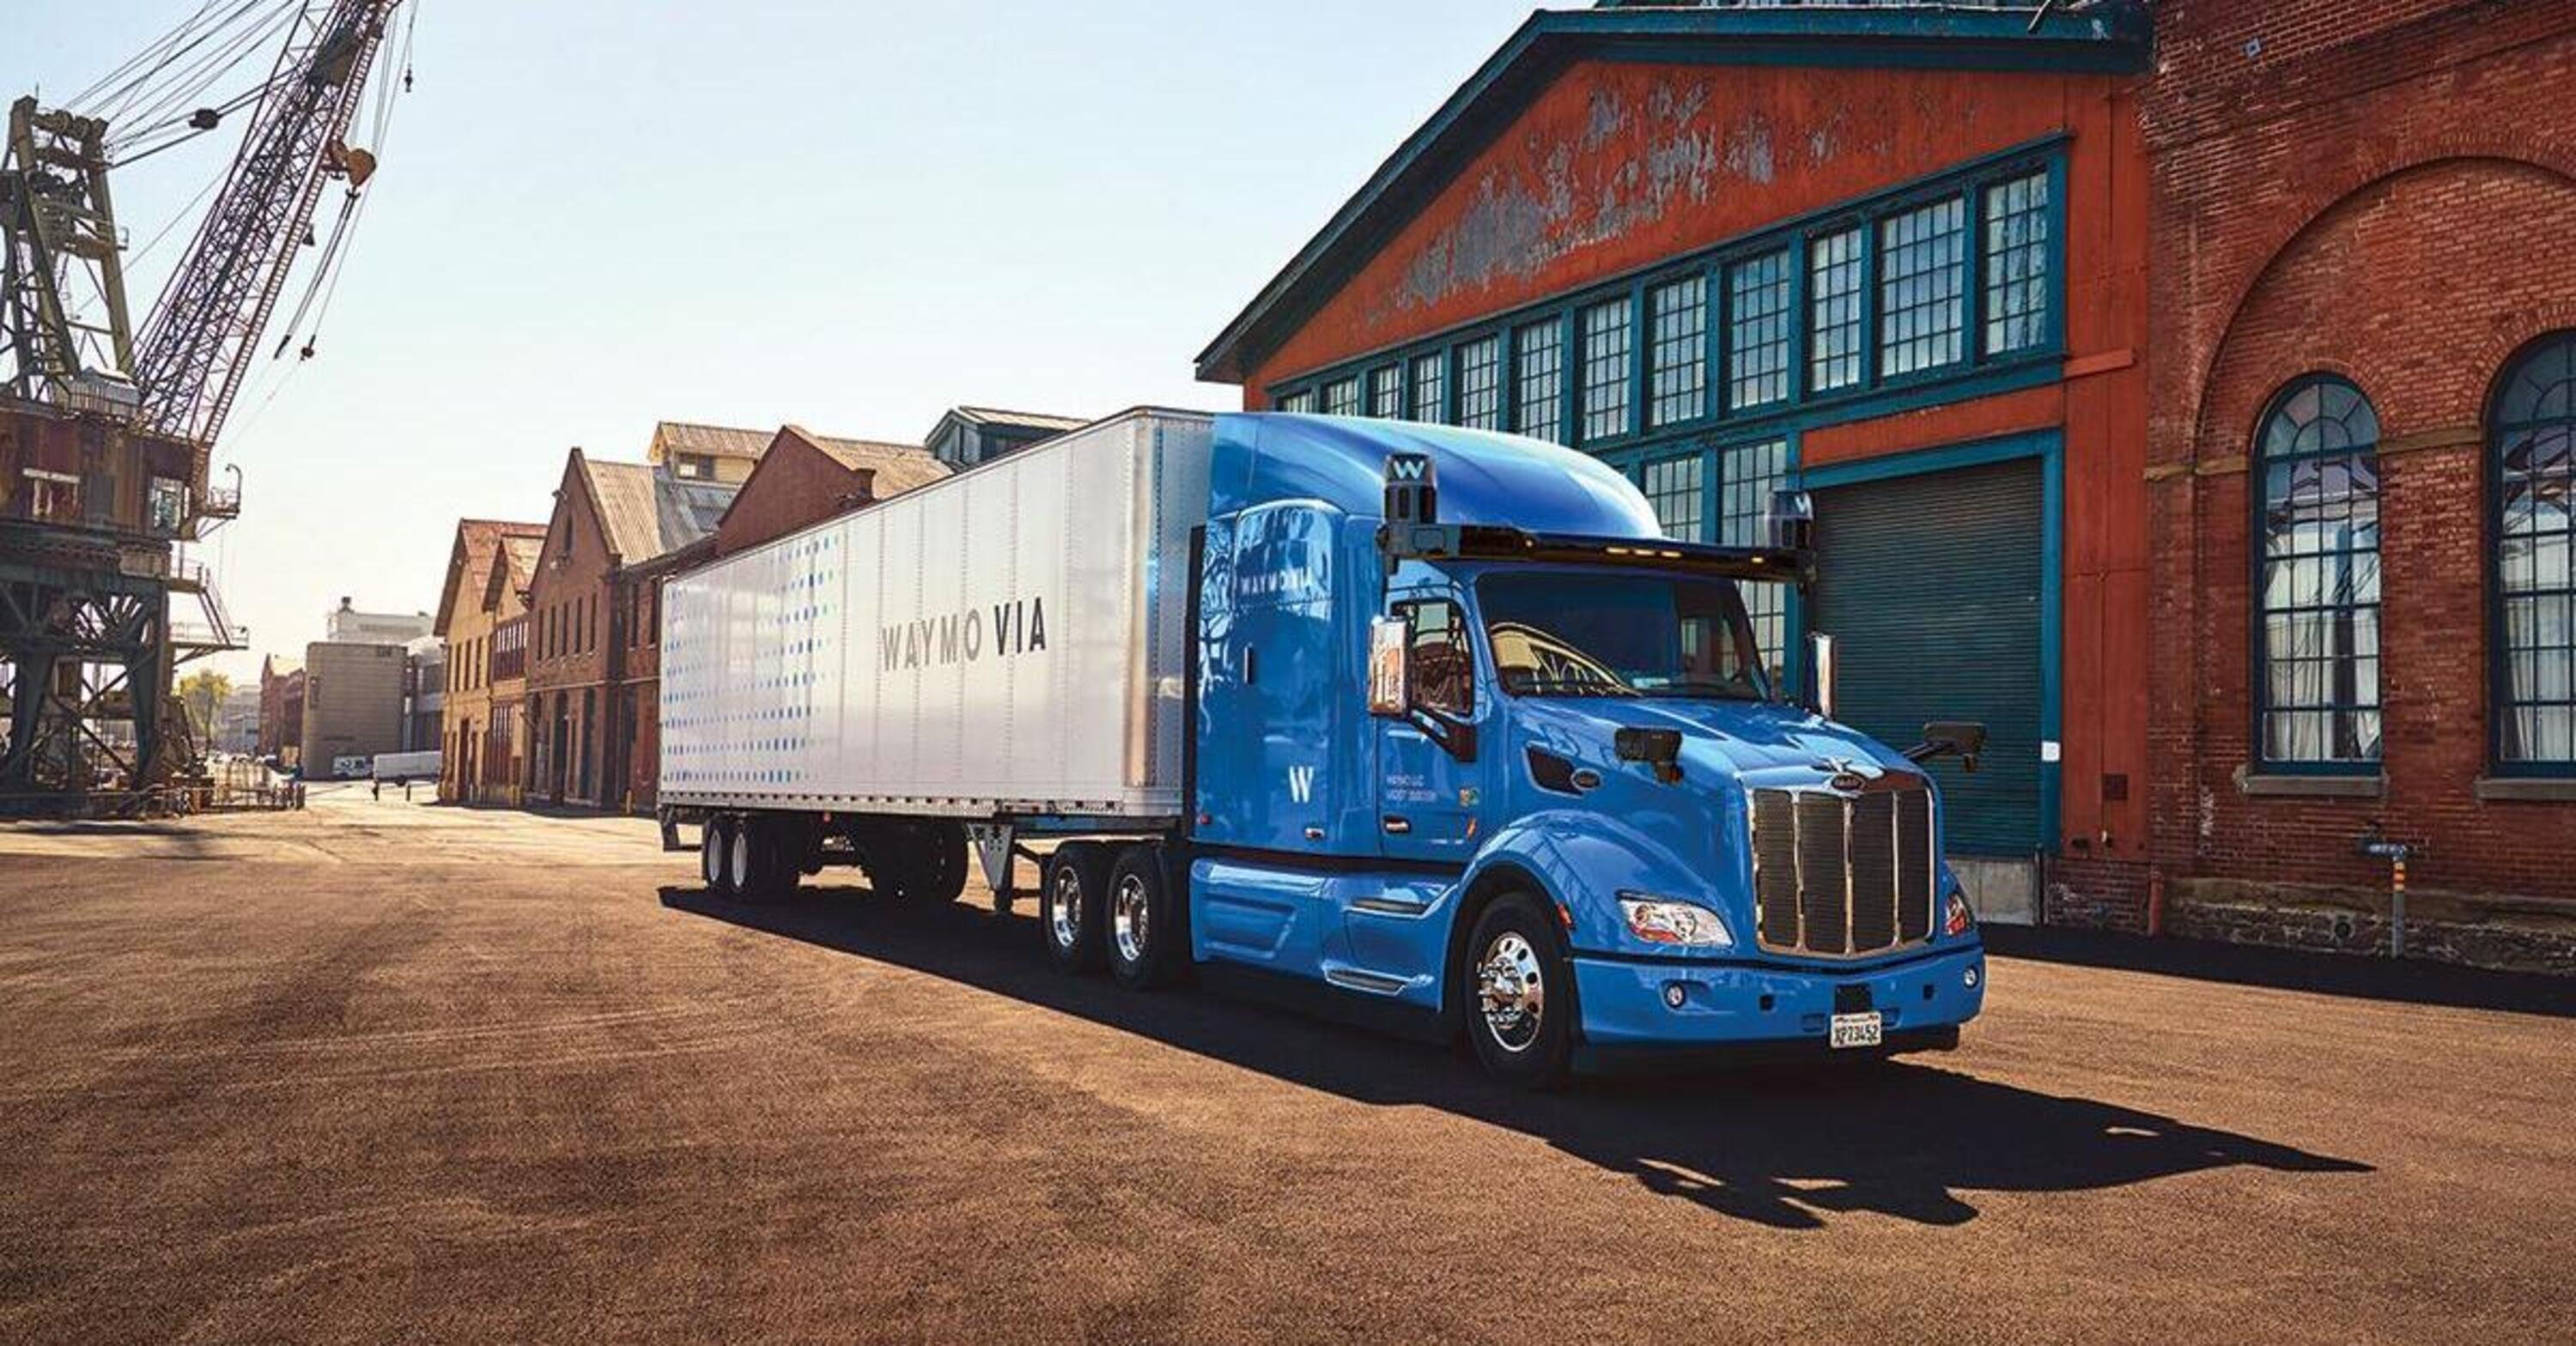 Anche i camion sono pronti alla guida autonoma: Waymo con supporti Google e Peterbilt prova in Texas